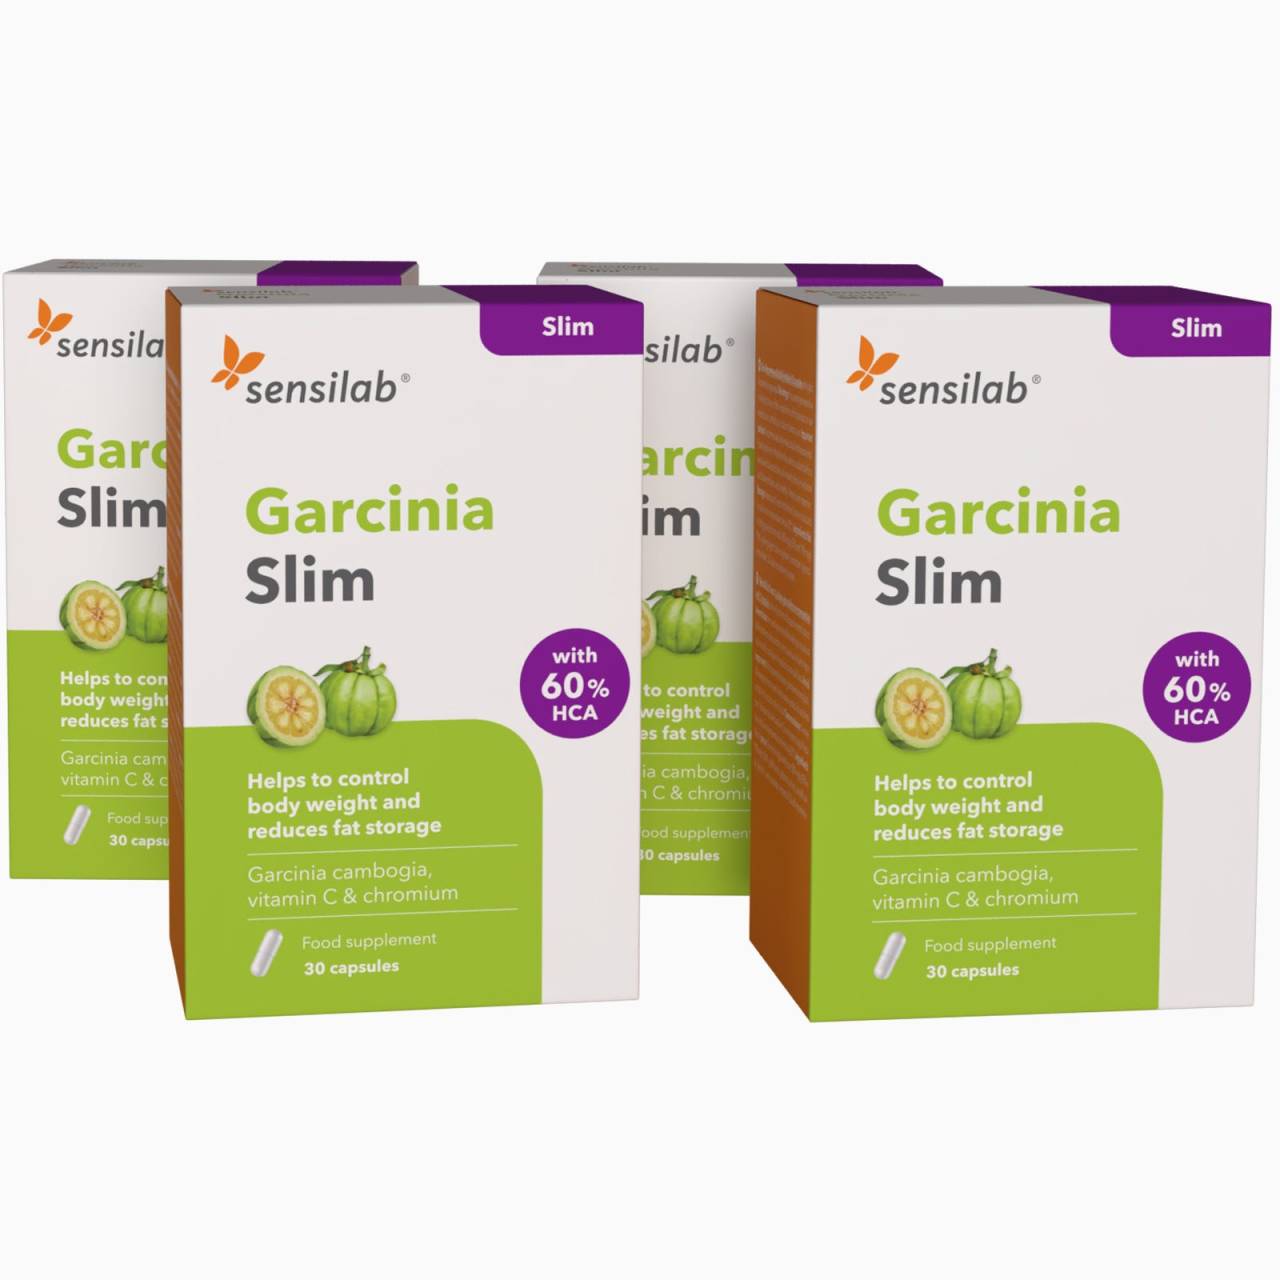 Garcinia Slim : 4 caixas - Cápsulas para inibir o apetite e perder peso com Garcinia Cambogia.